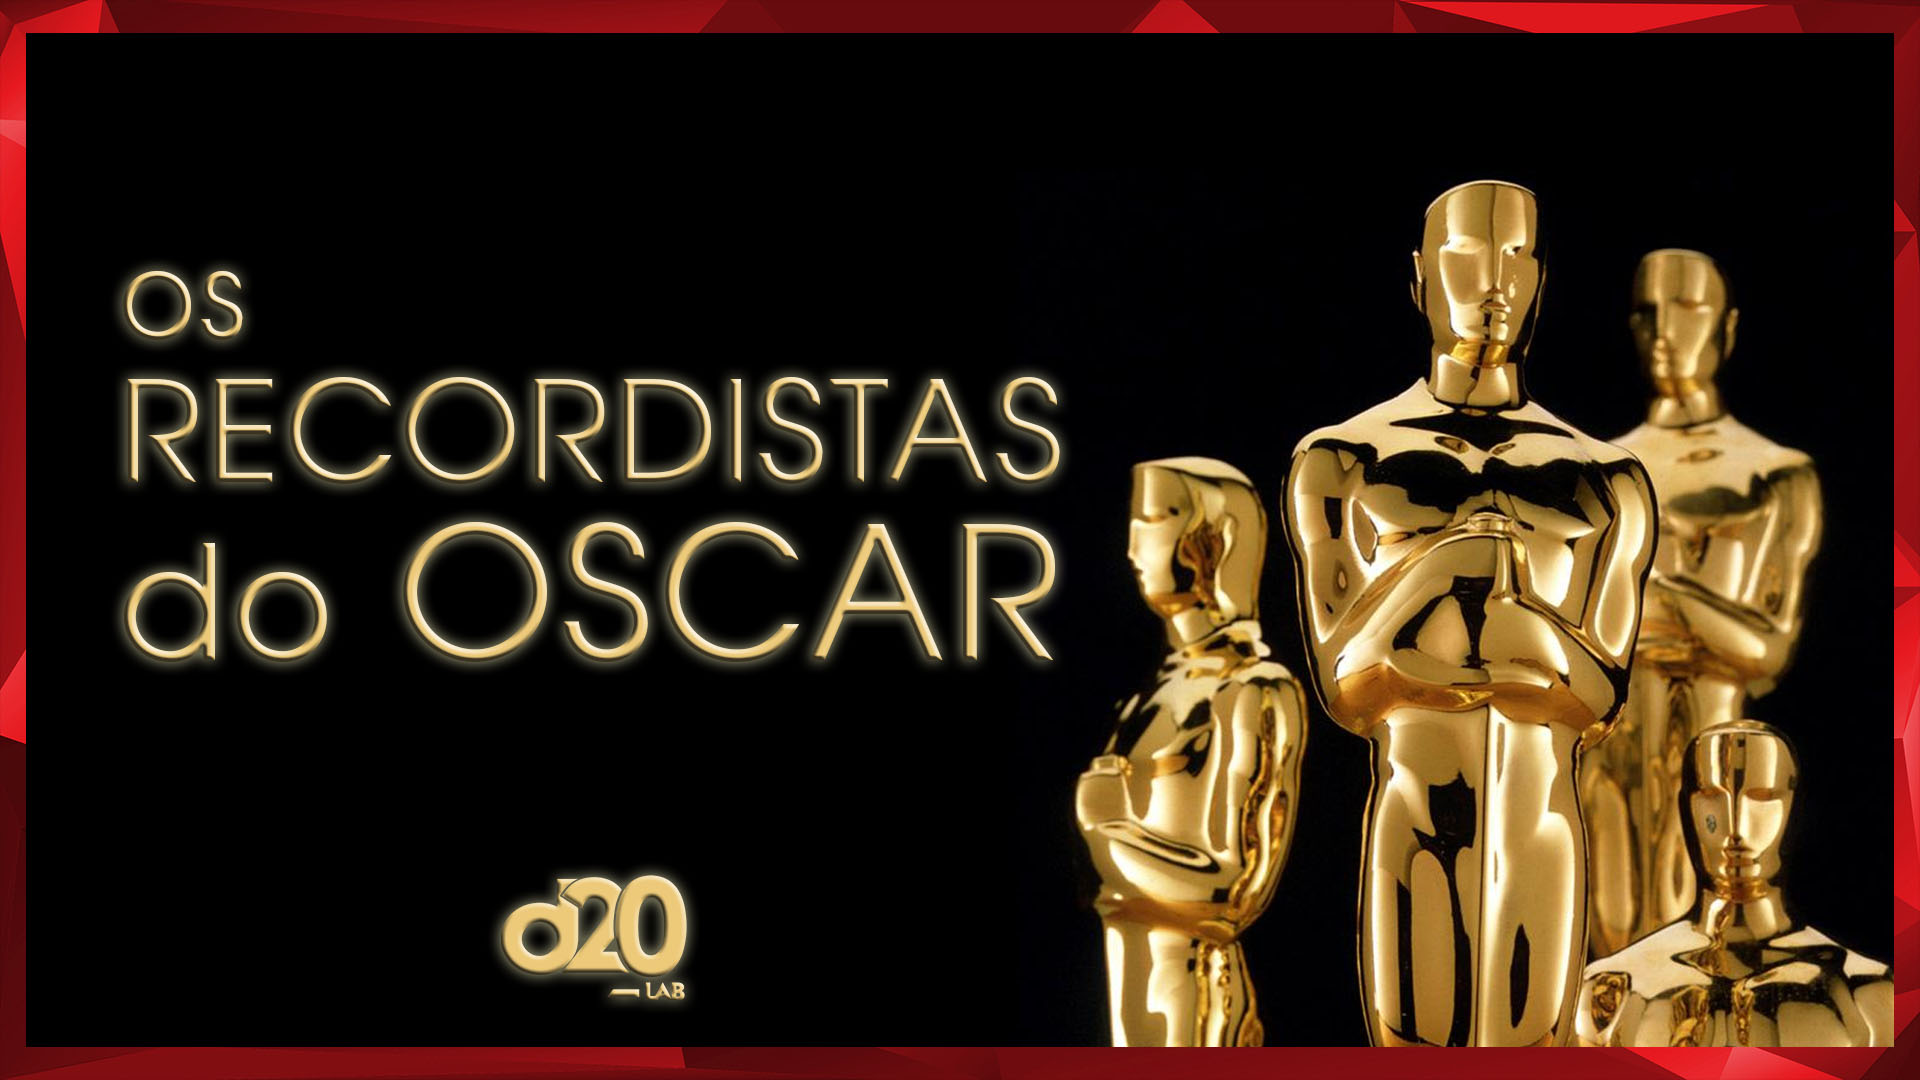 Os Maiores Recordistas da História do Oscar | D20 Lab 40